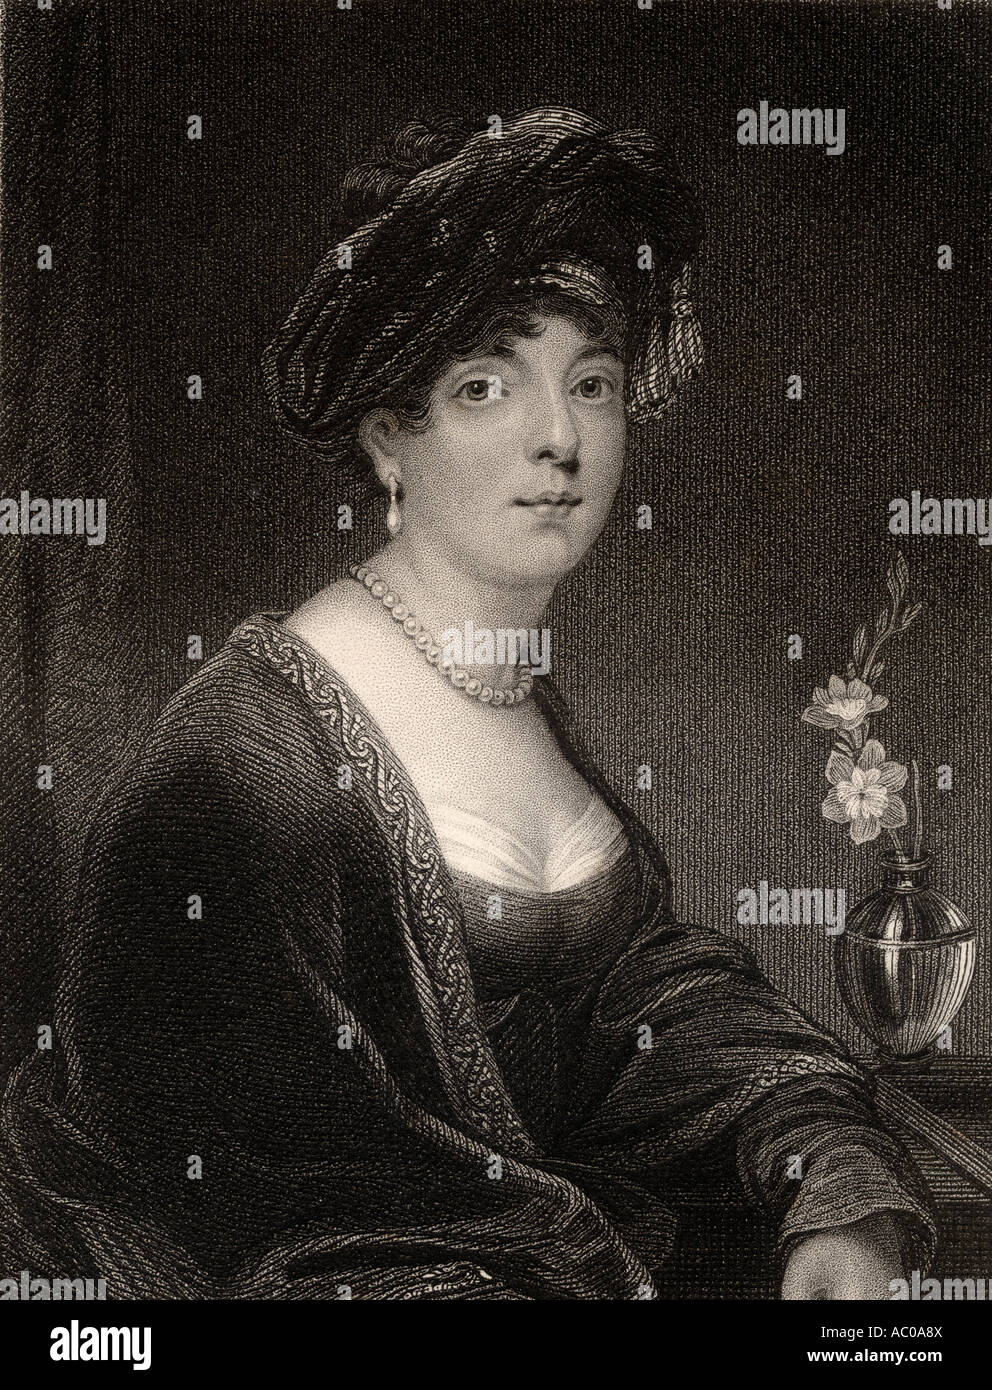 Elizabeth Leveson Gower, Herzogin und 19. Gräfin von Sutherland, 1765 - 1839. Schottische Peeress, Künstlerin und Reformerin. Stockfoto